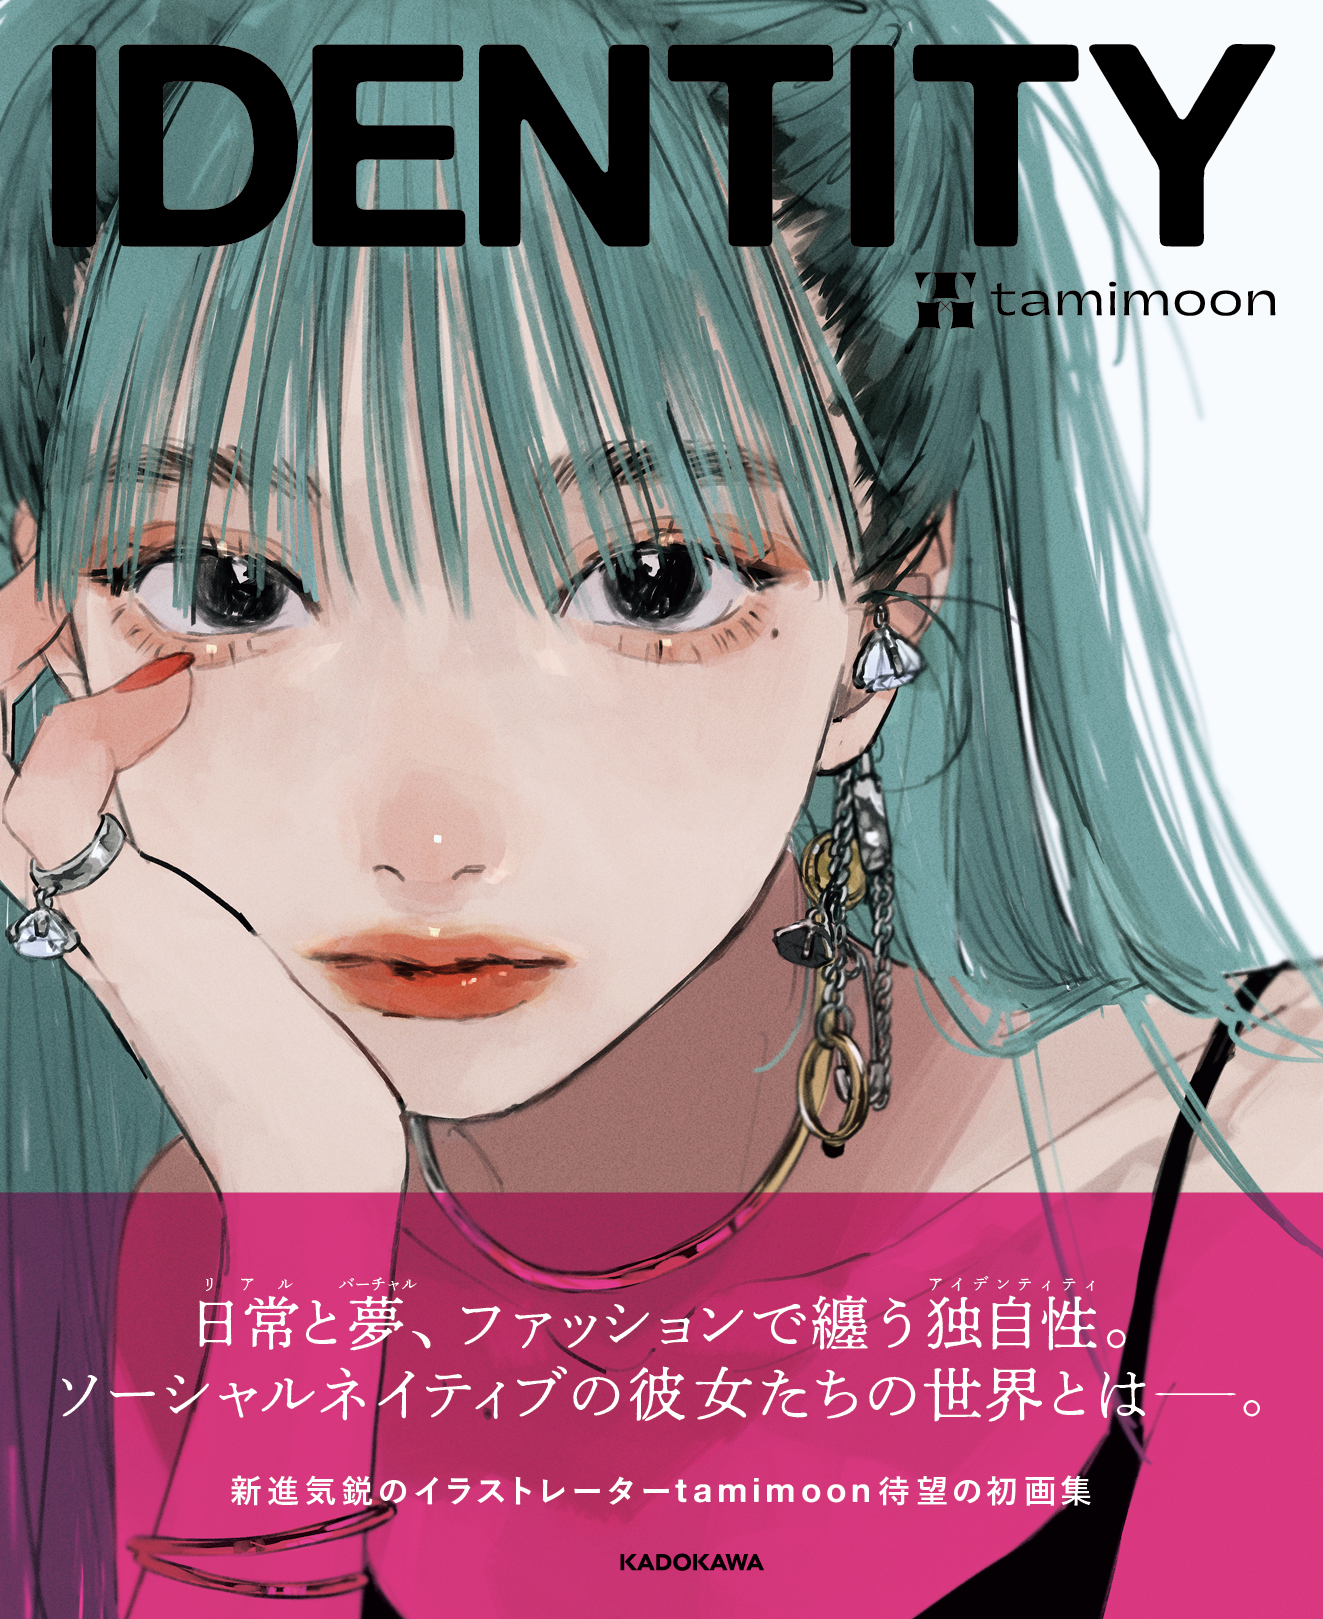 ファッション誌のような画集 新進気鋭のイラストレーター Tamimoon初の作品集 Identity が2月12日発売 株式会社kadokawaのプレスリリース